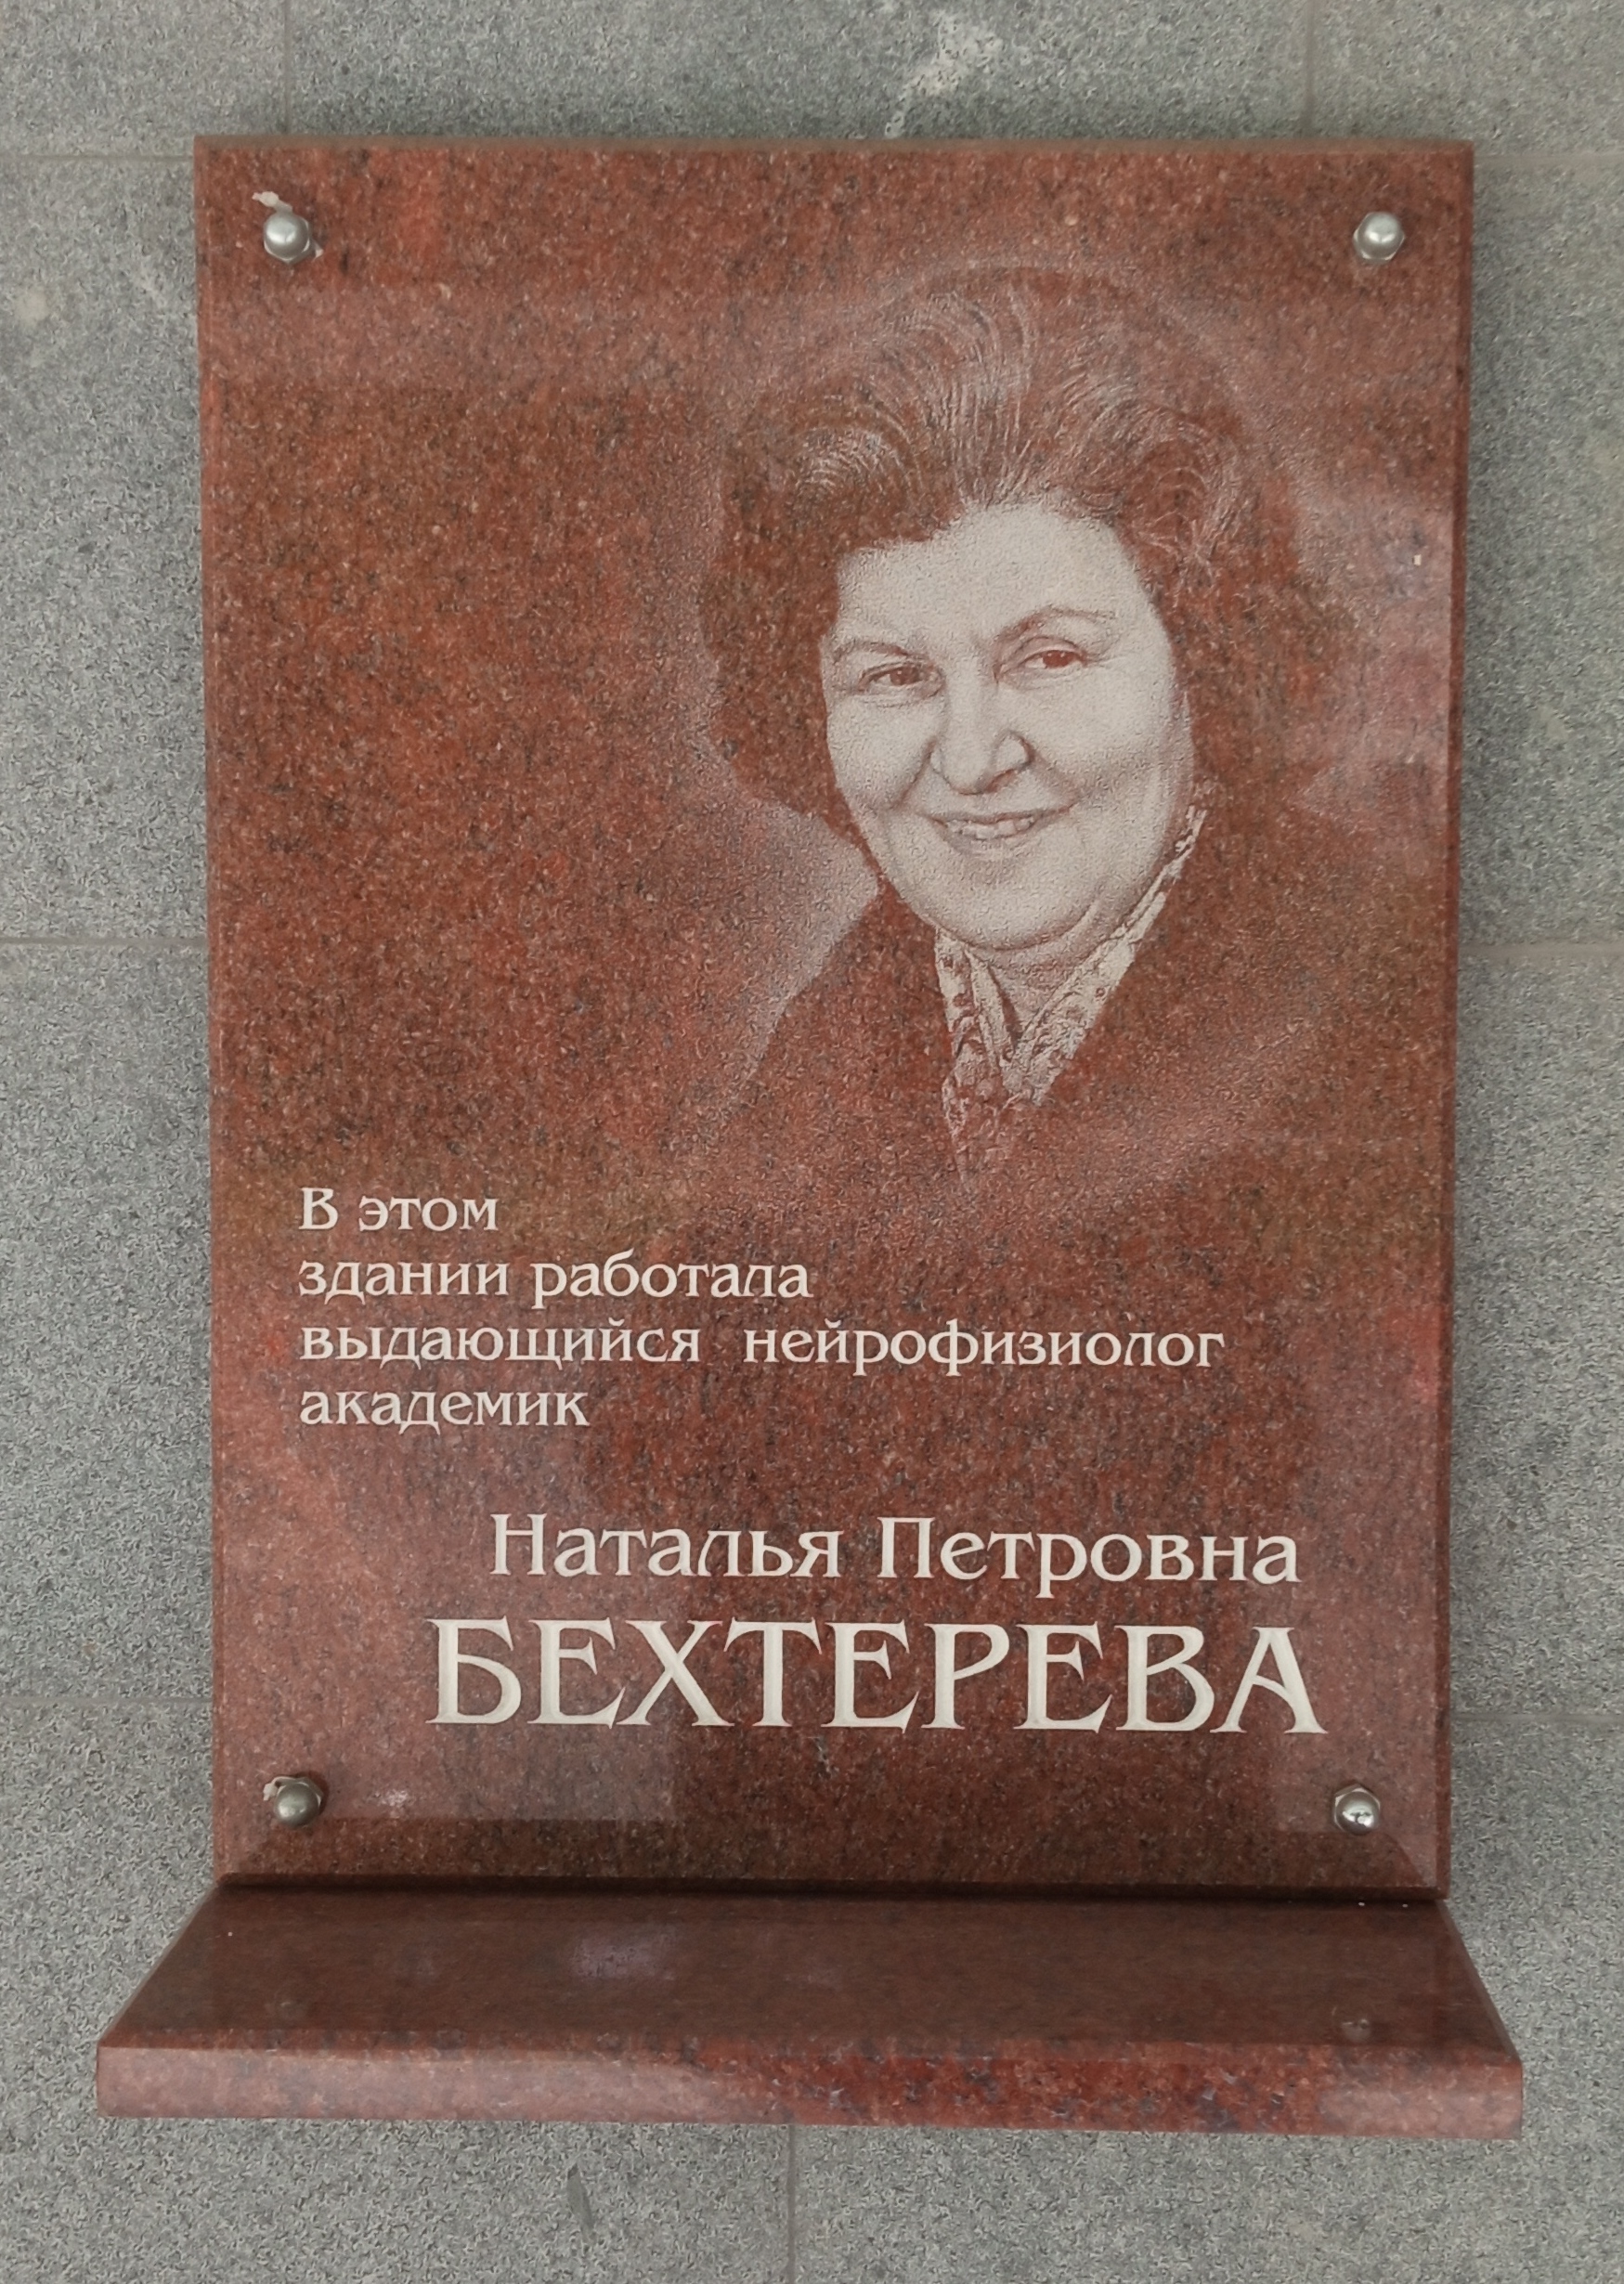 Файл:Наталья Бехтерева (мемориальная доска).jpg — Википедия